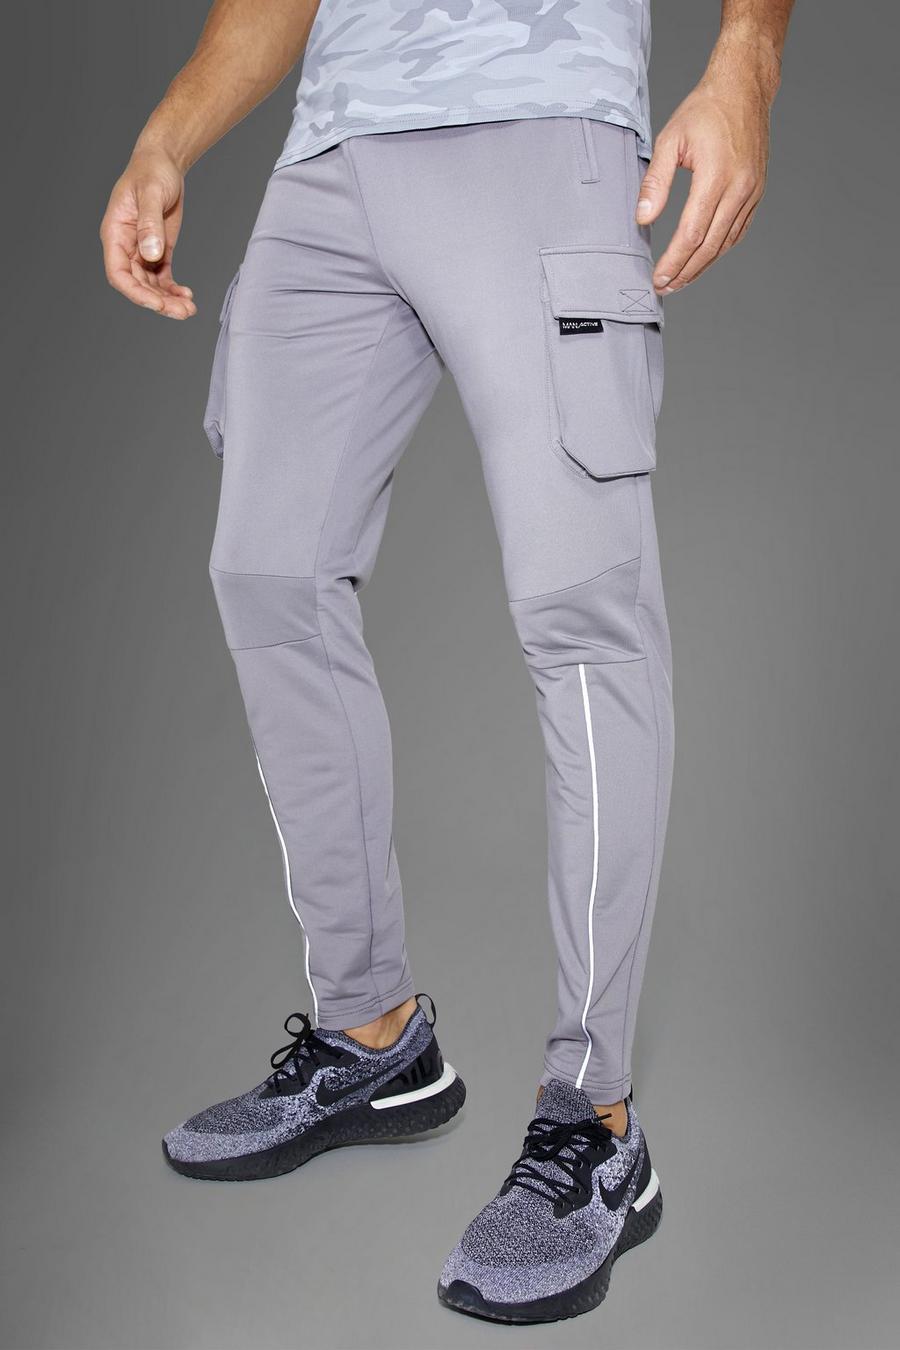 אפור grey מכנסי טרנינג דגמ'ח ספורטיביים לחדר הכושר עם כיתוב Man